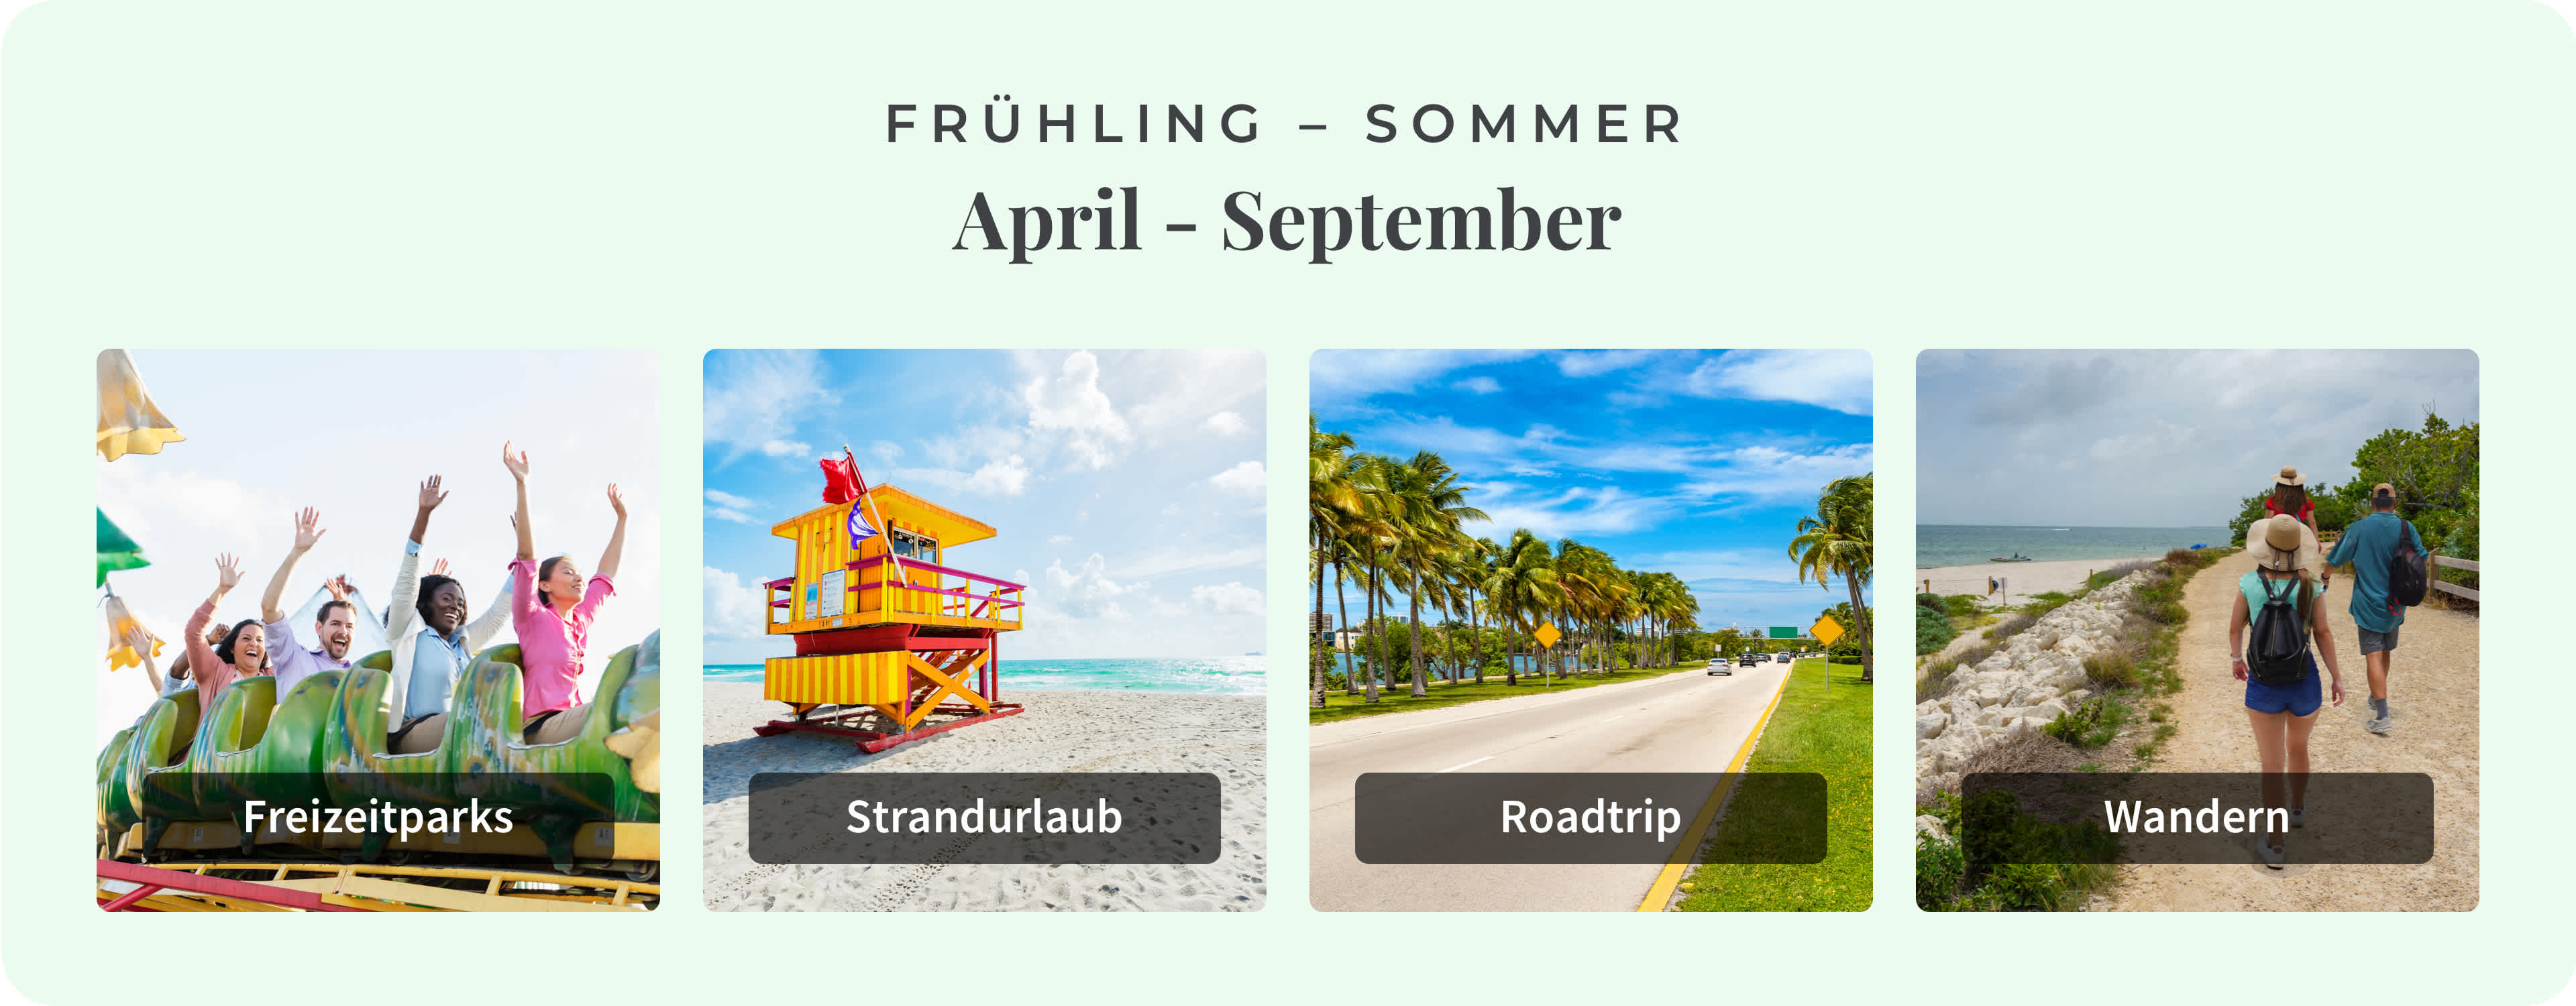 Die besten lokalen Aktivitäten in Florida während der Frühling-Sommersaison.